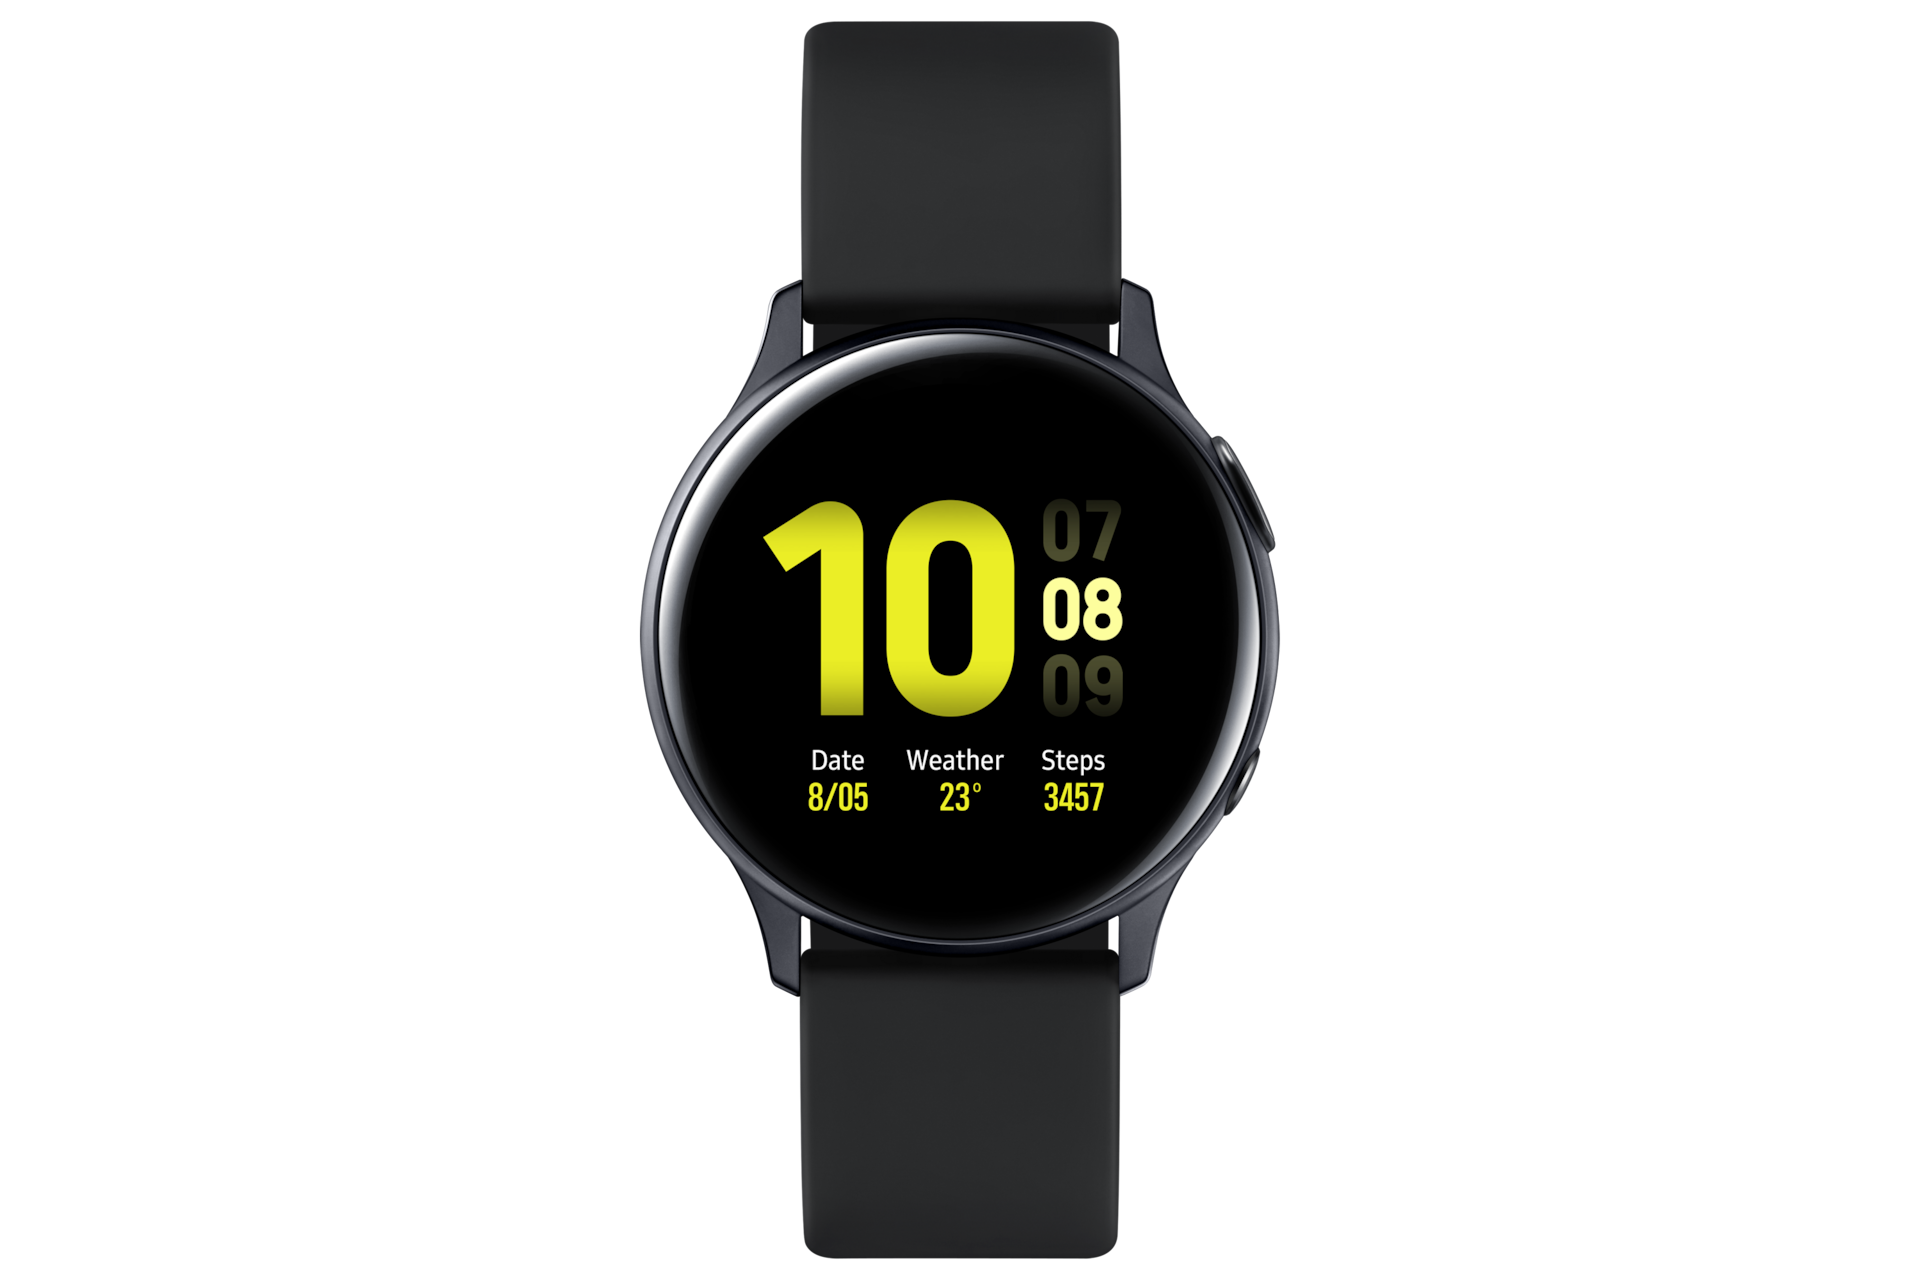 Samsung Galaxy Watch 4 problems: Đừng bỏ lỡ cơ hội để tìm hiểu về những vấn đề mà Samsung đang cố gắng khắc phục trên Galaxy Watch